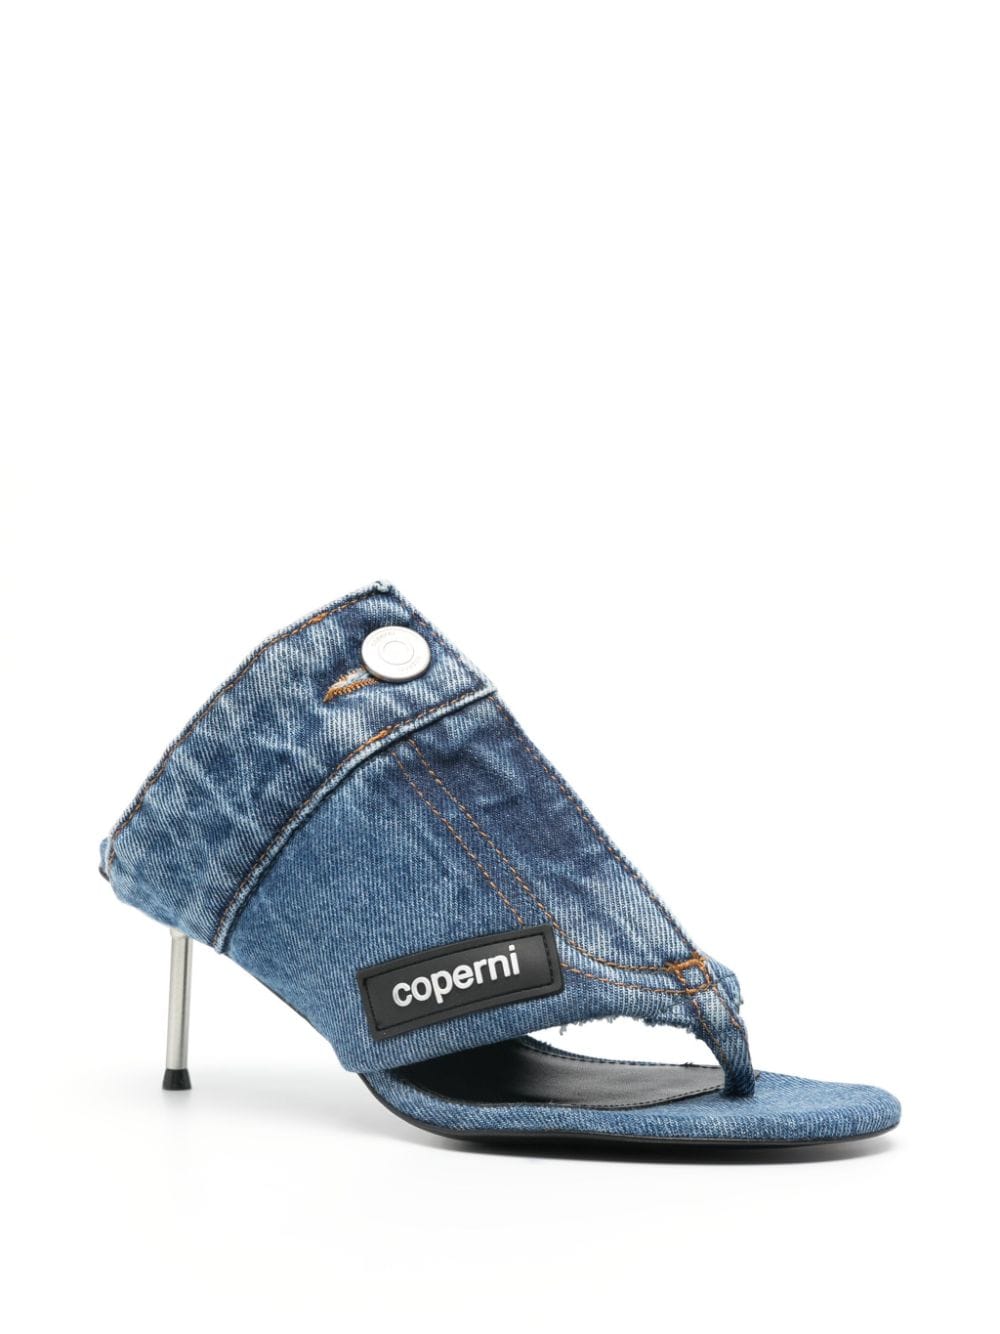 Image 2 of Coperni 70mm denim sandals